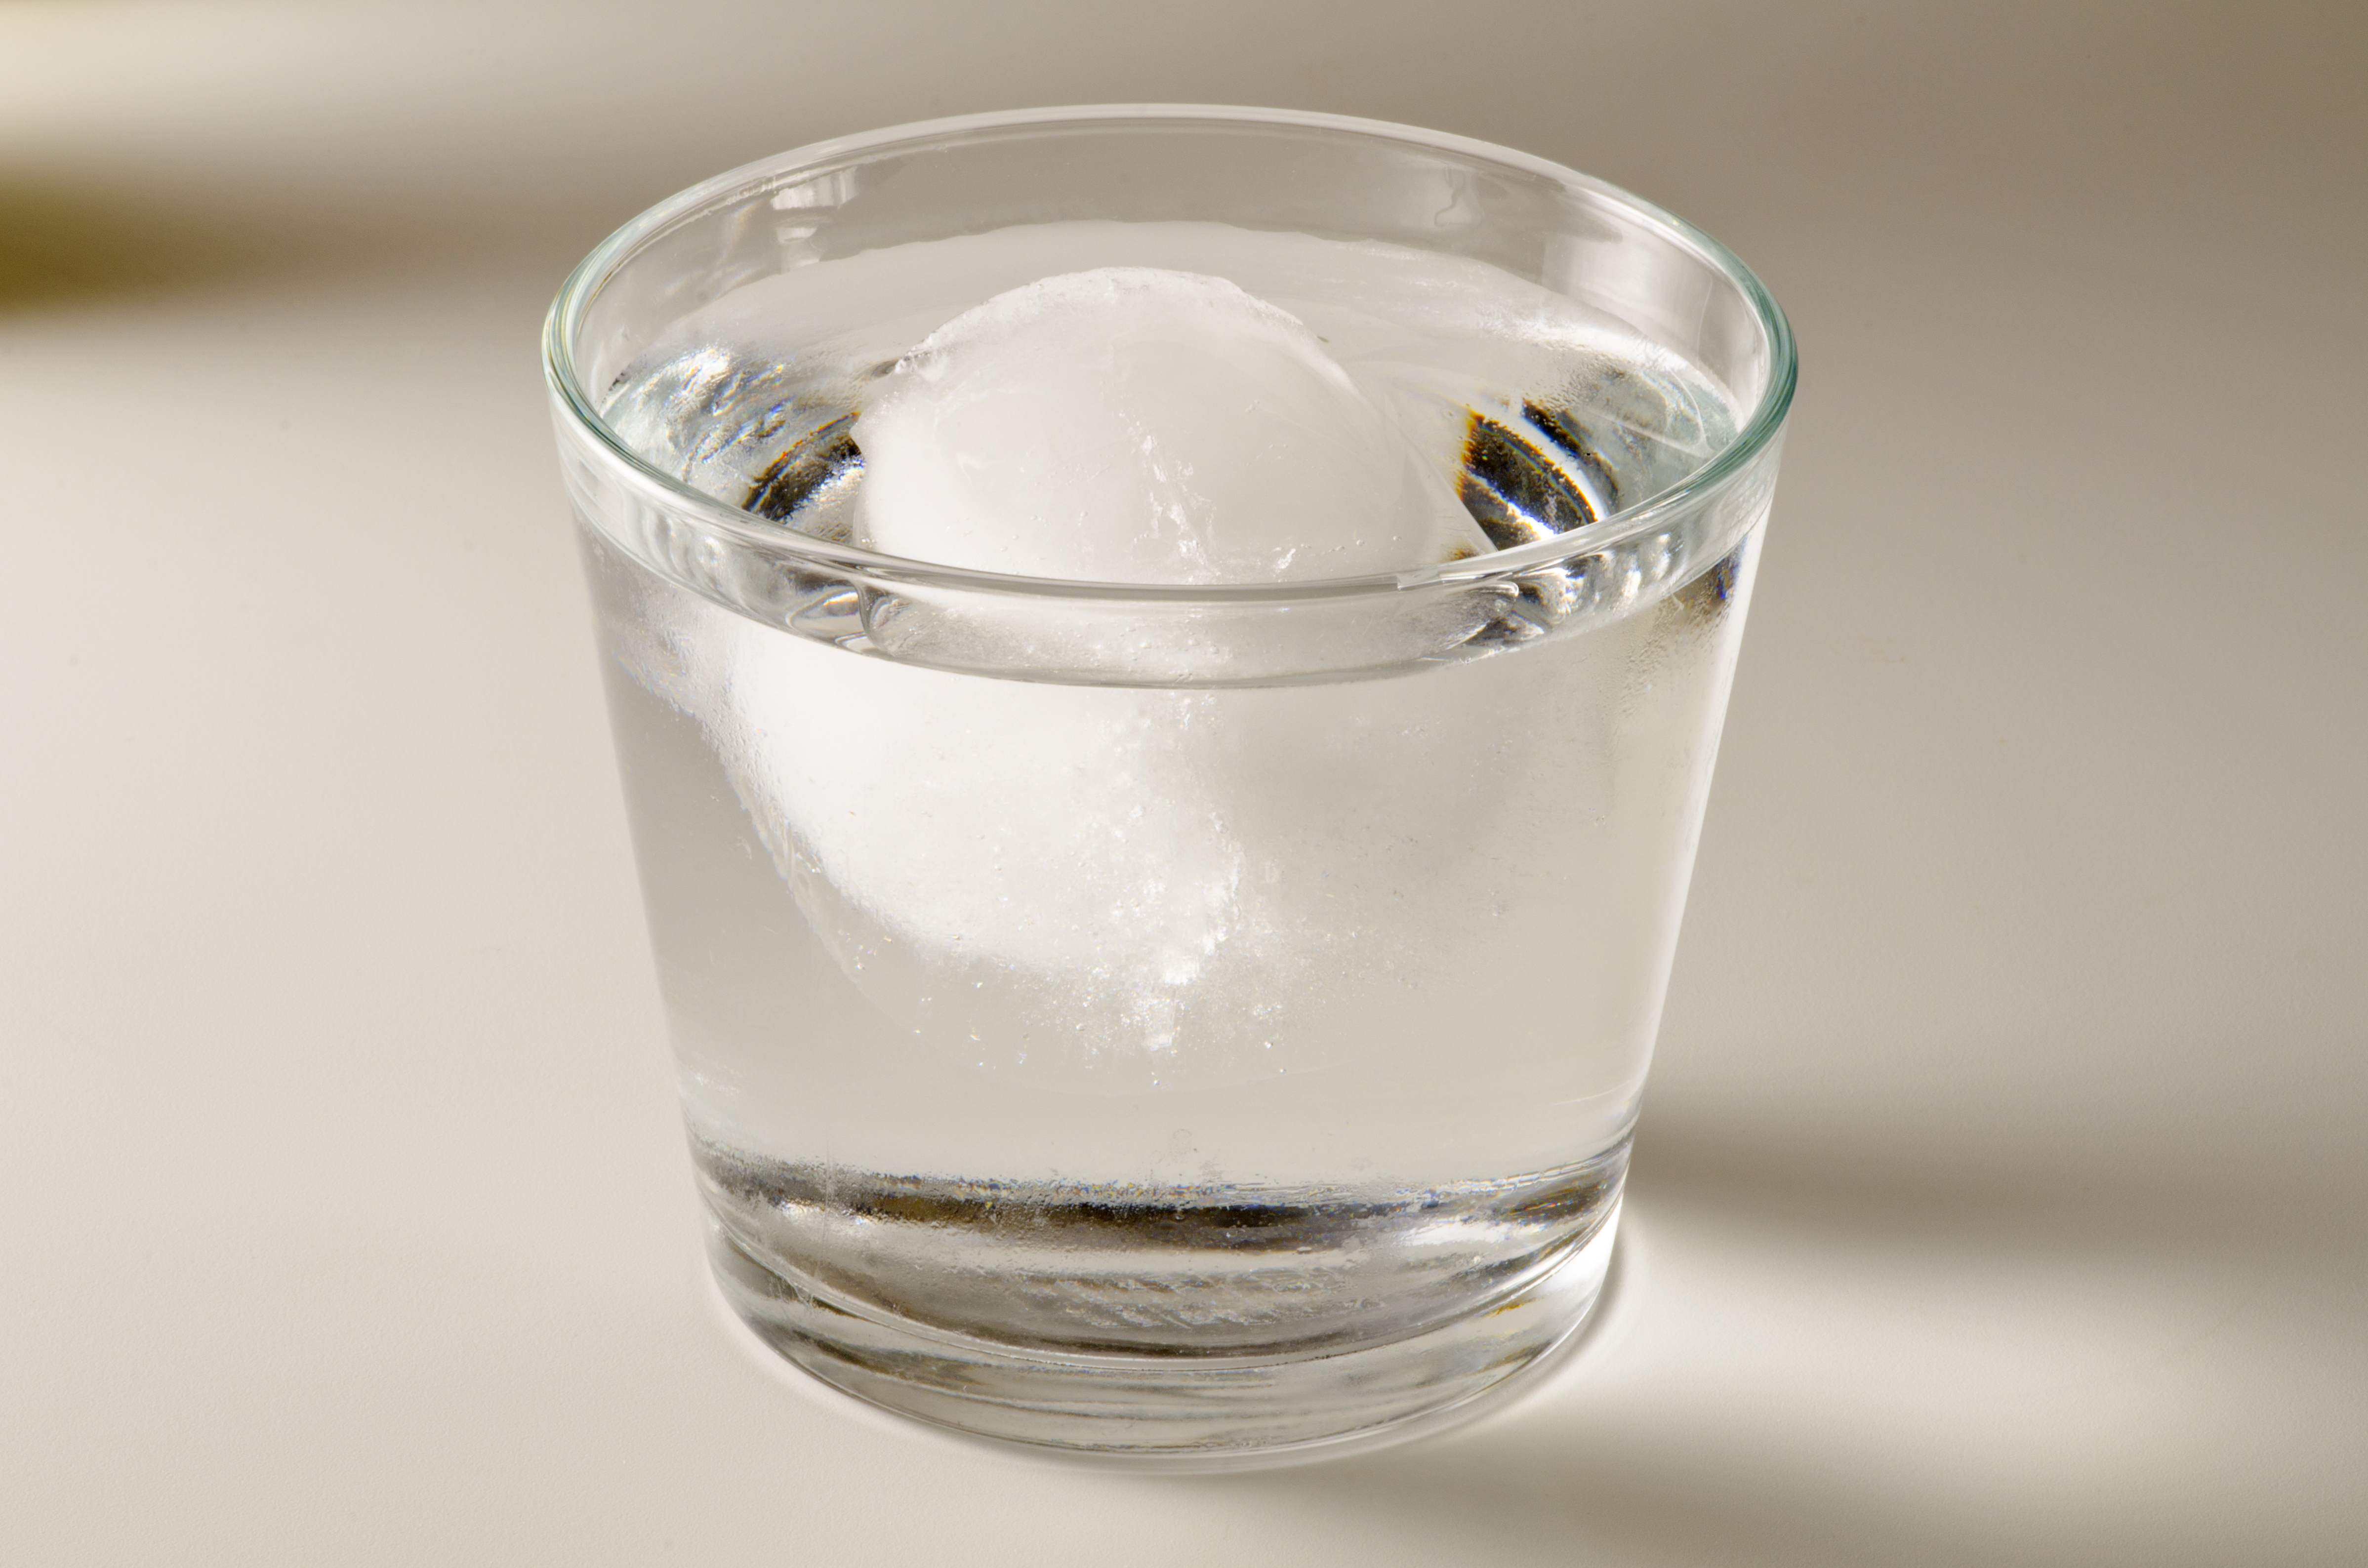 Лед всплывает в воде. Лед в стакане. Стакан воды со льдом. Вода лед в стакане плавает. Лед плавает в стаканчике с водой.